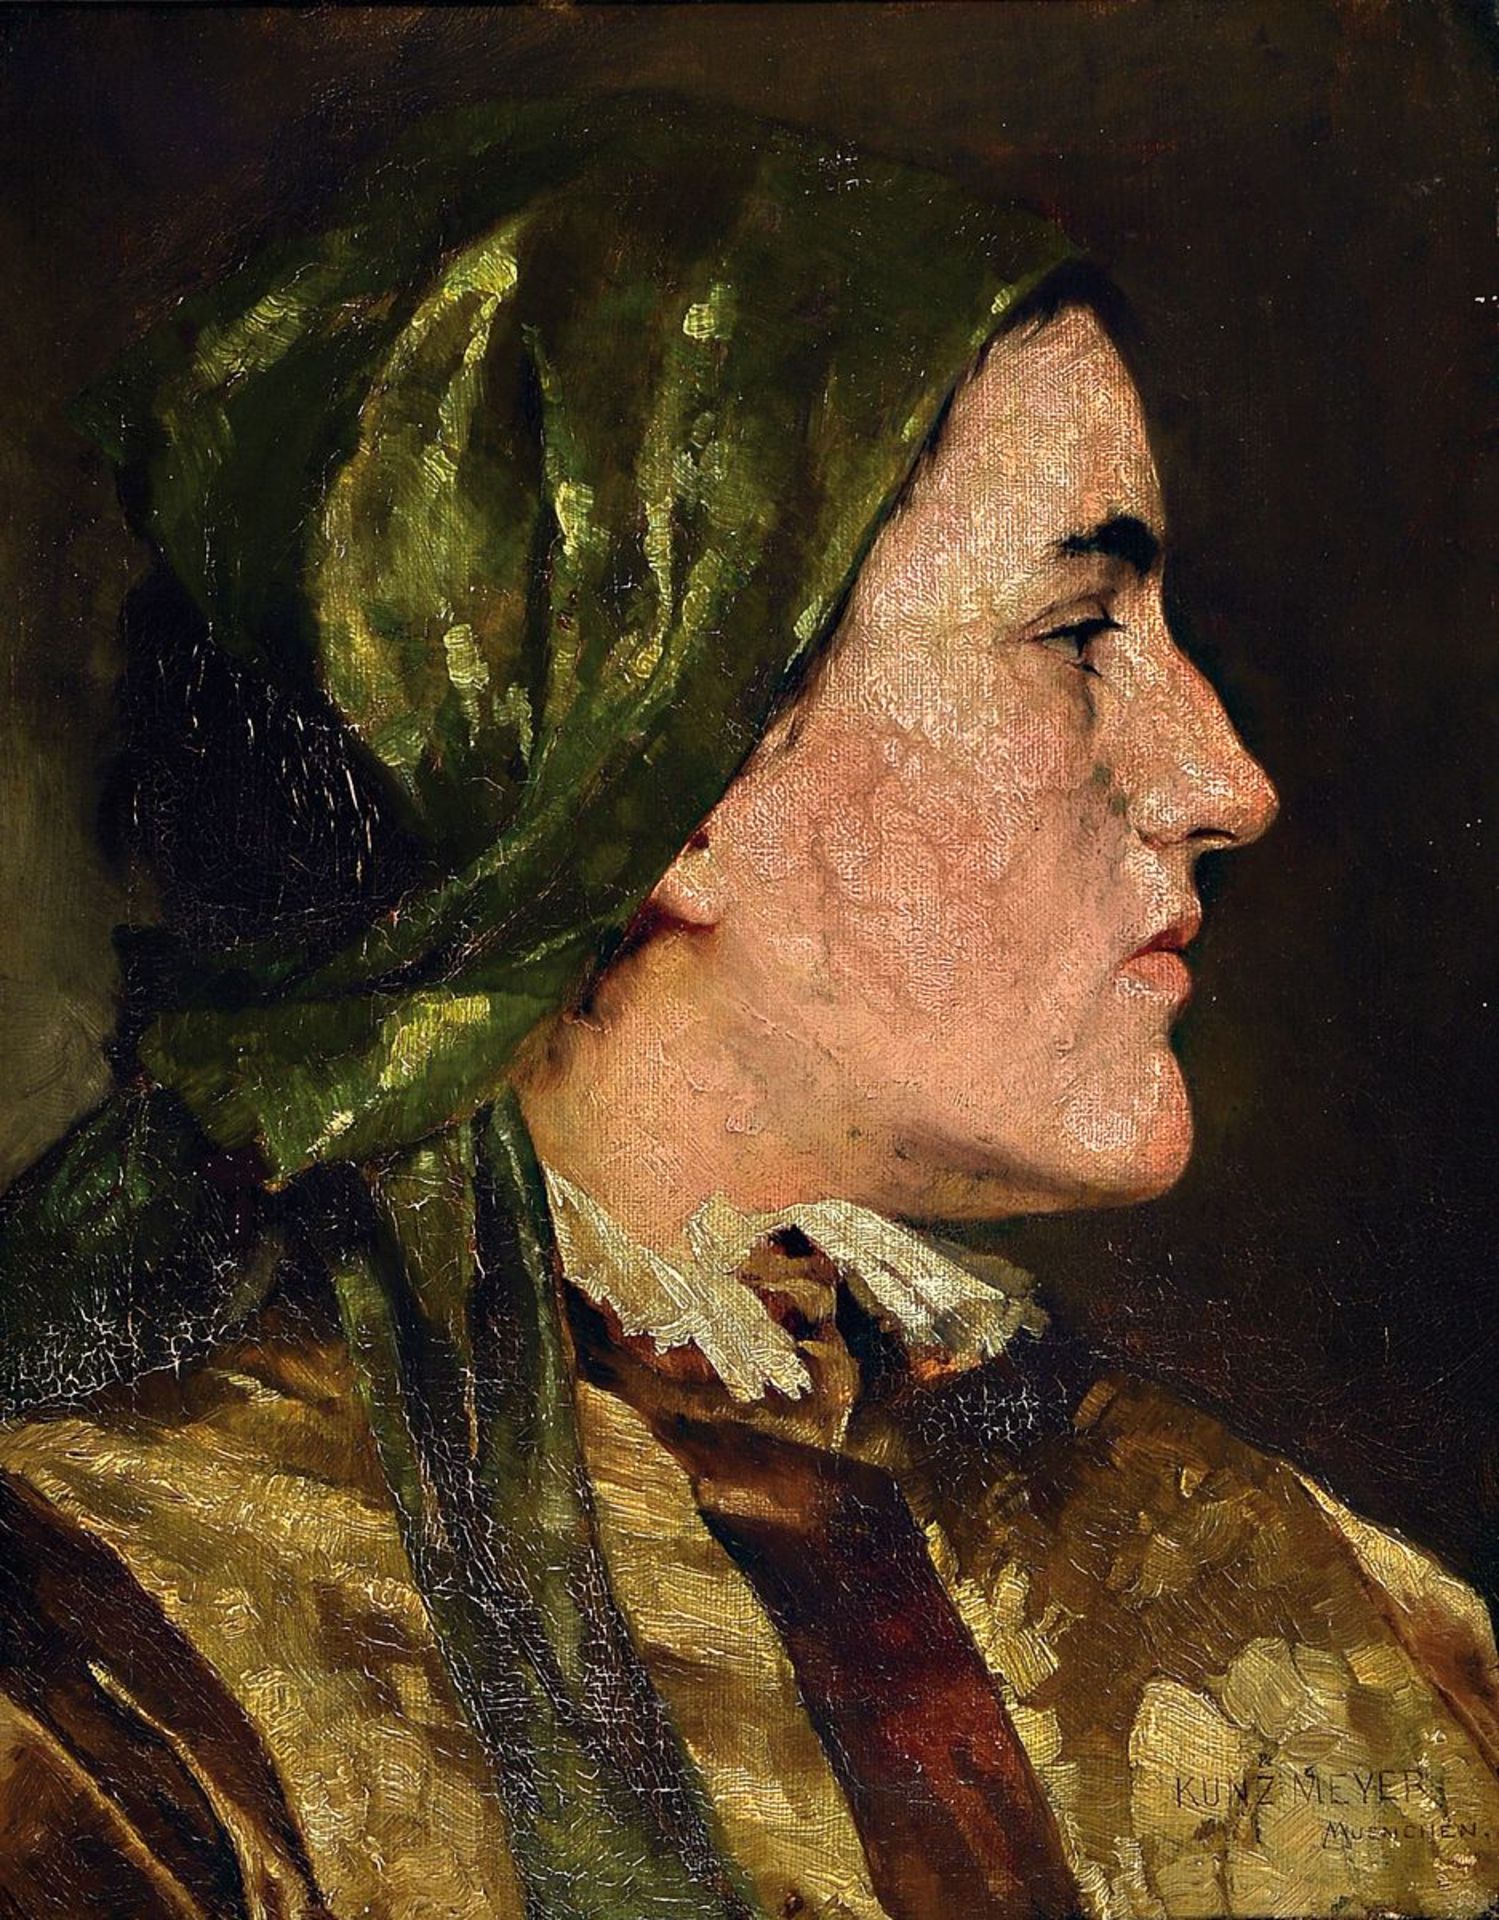 Kunz Meyer-Waldeck, 1859-1953,  Profilporträt einer jungen